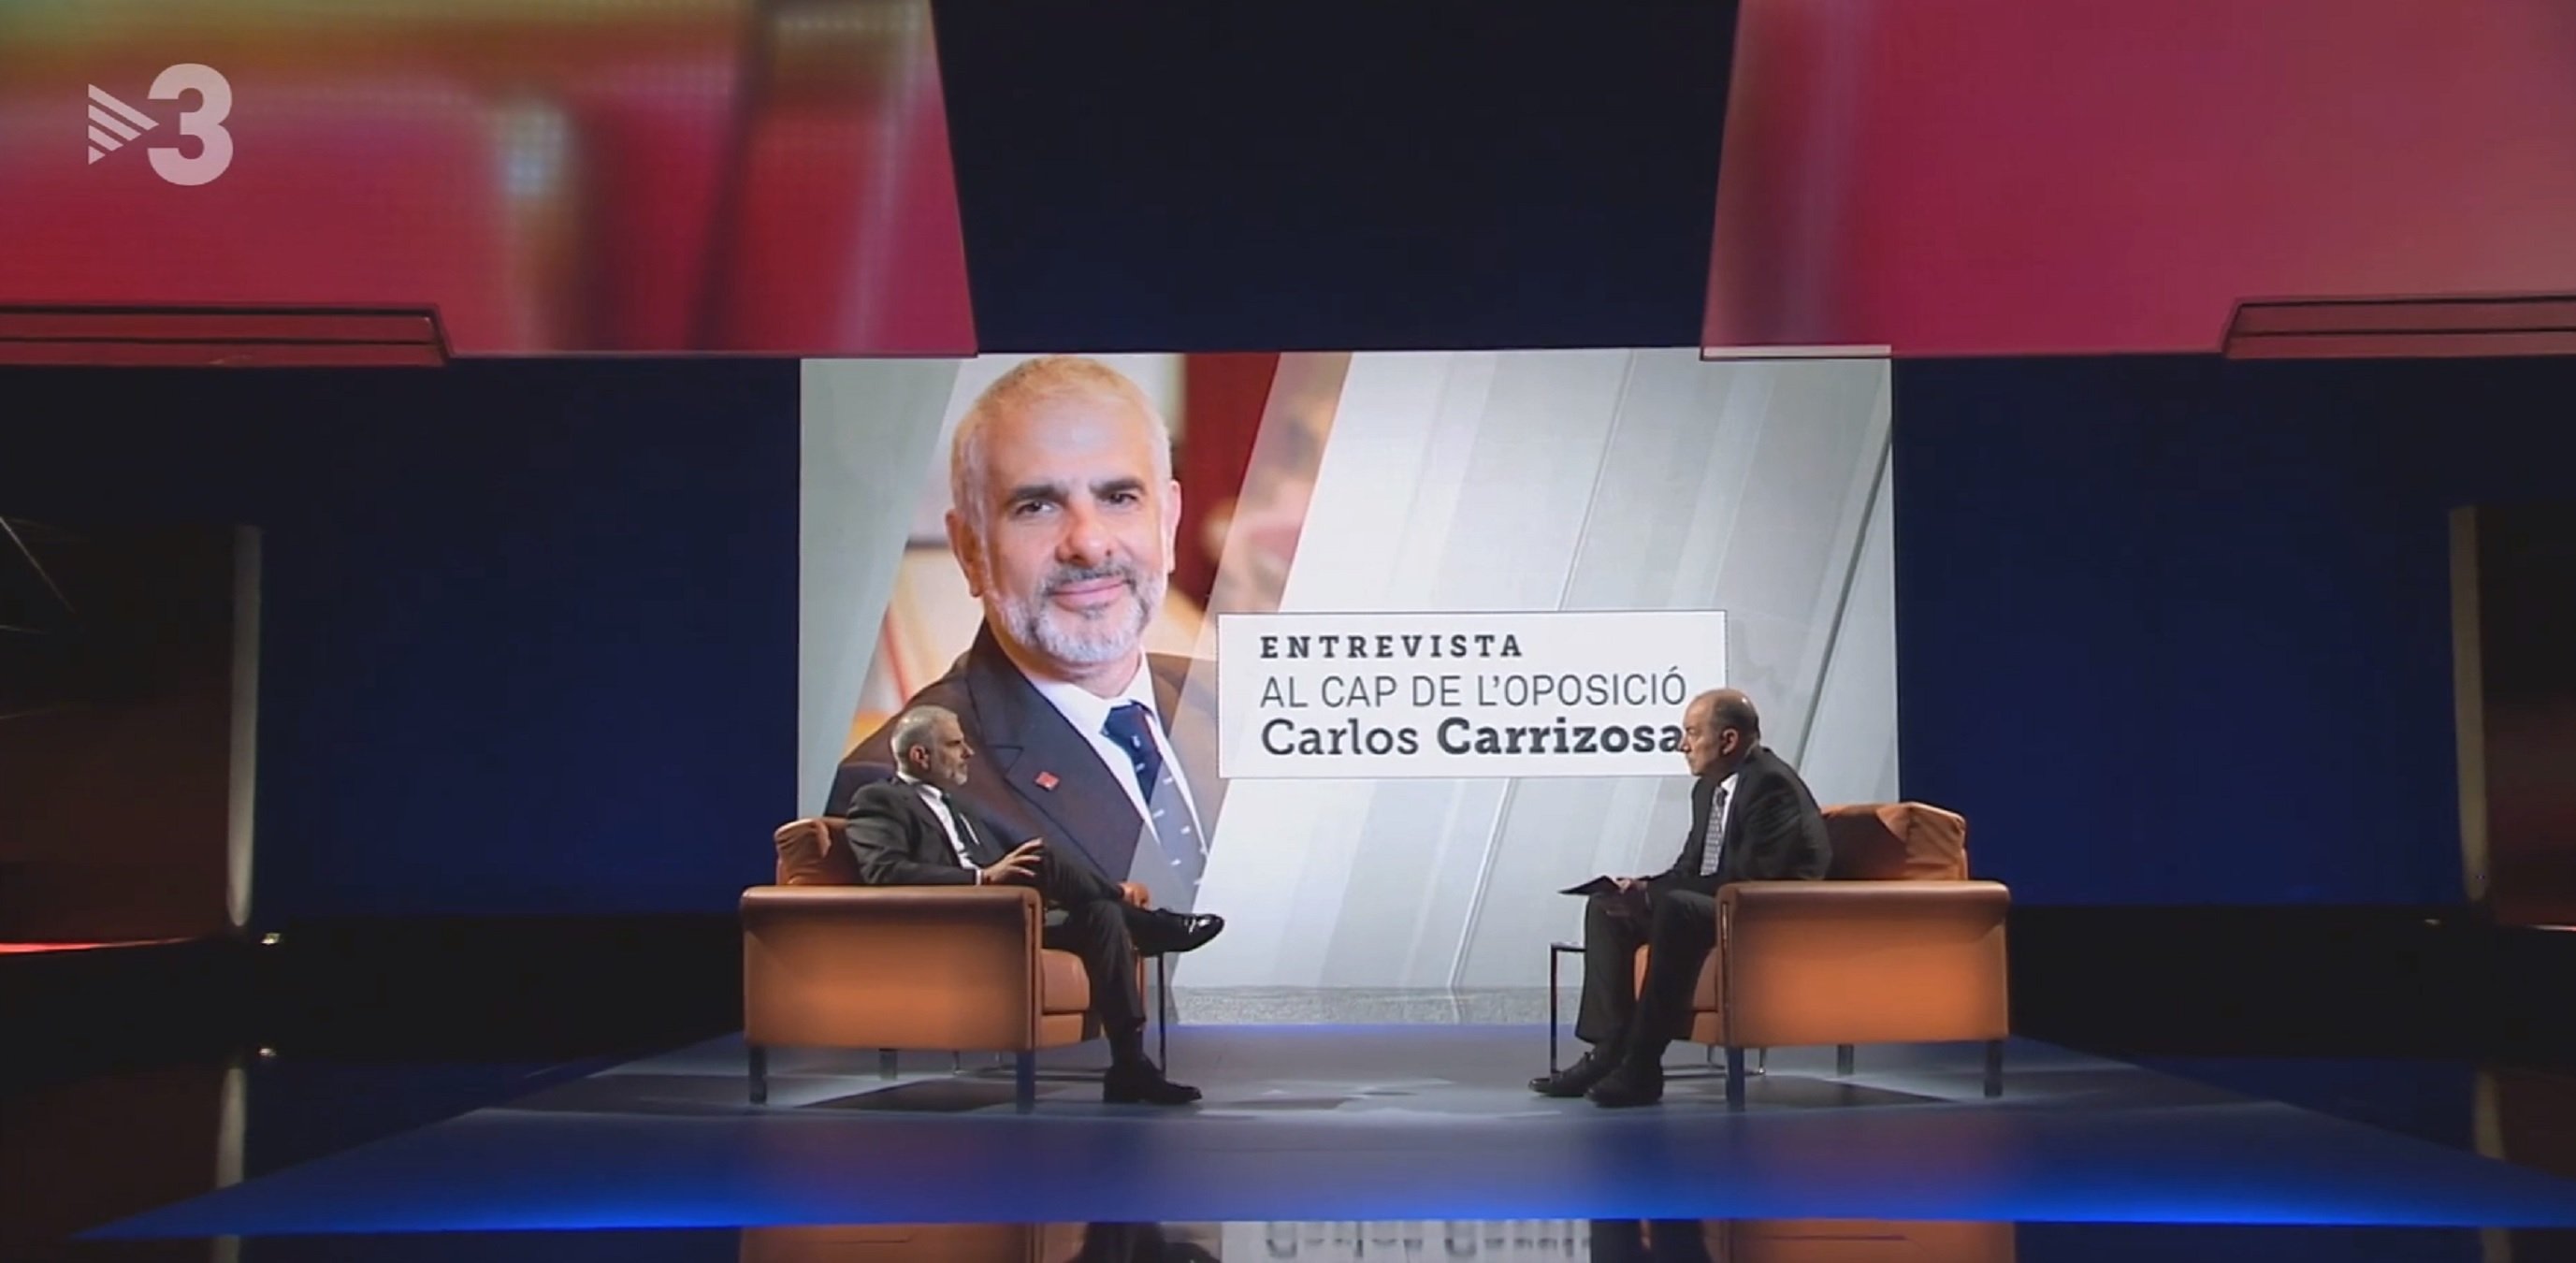 Un presentador indepe de TV3 explota contra Carrizosa: "vergonya intolerable"